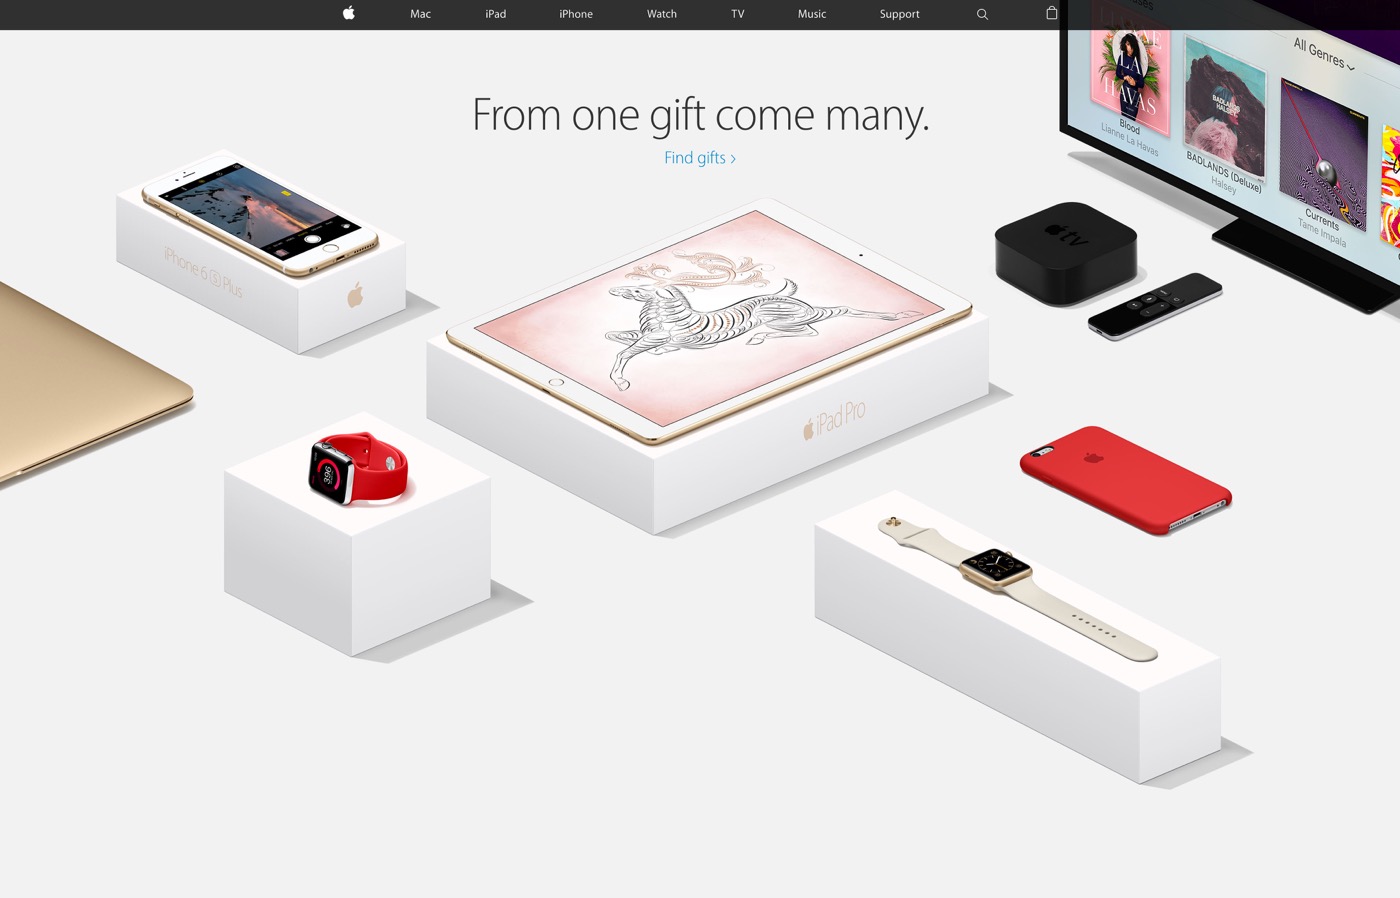 米Apple、ホリデーシーズンのプレゼントにオススメの商品をまとめた特集ページを公開